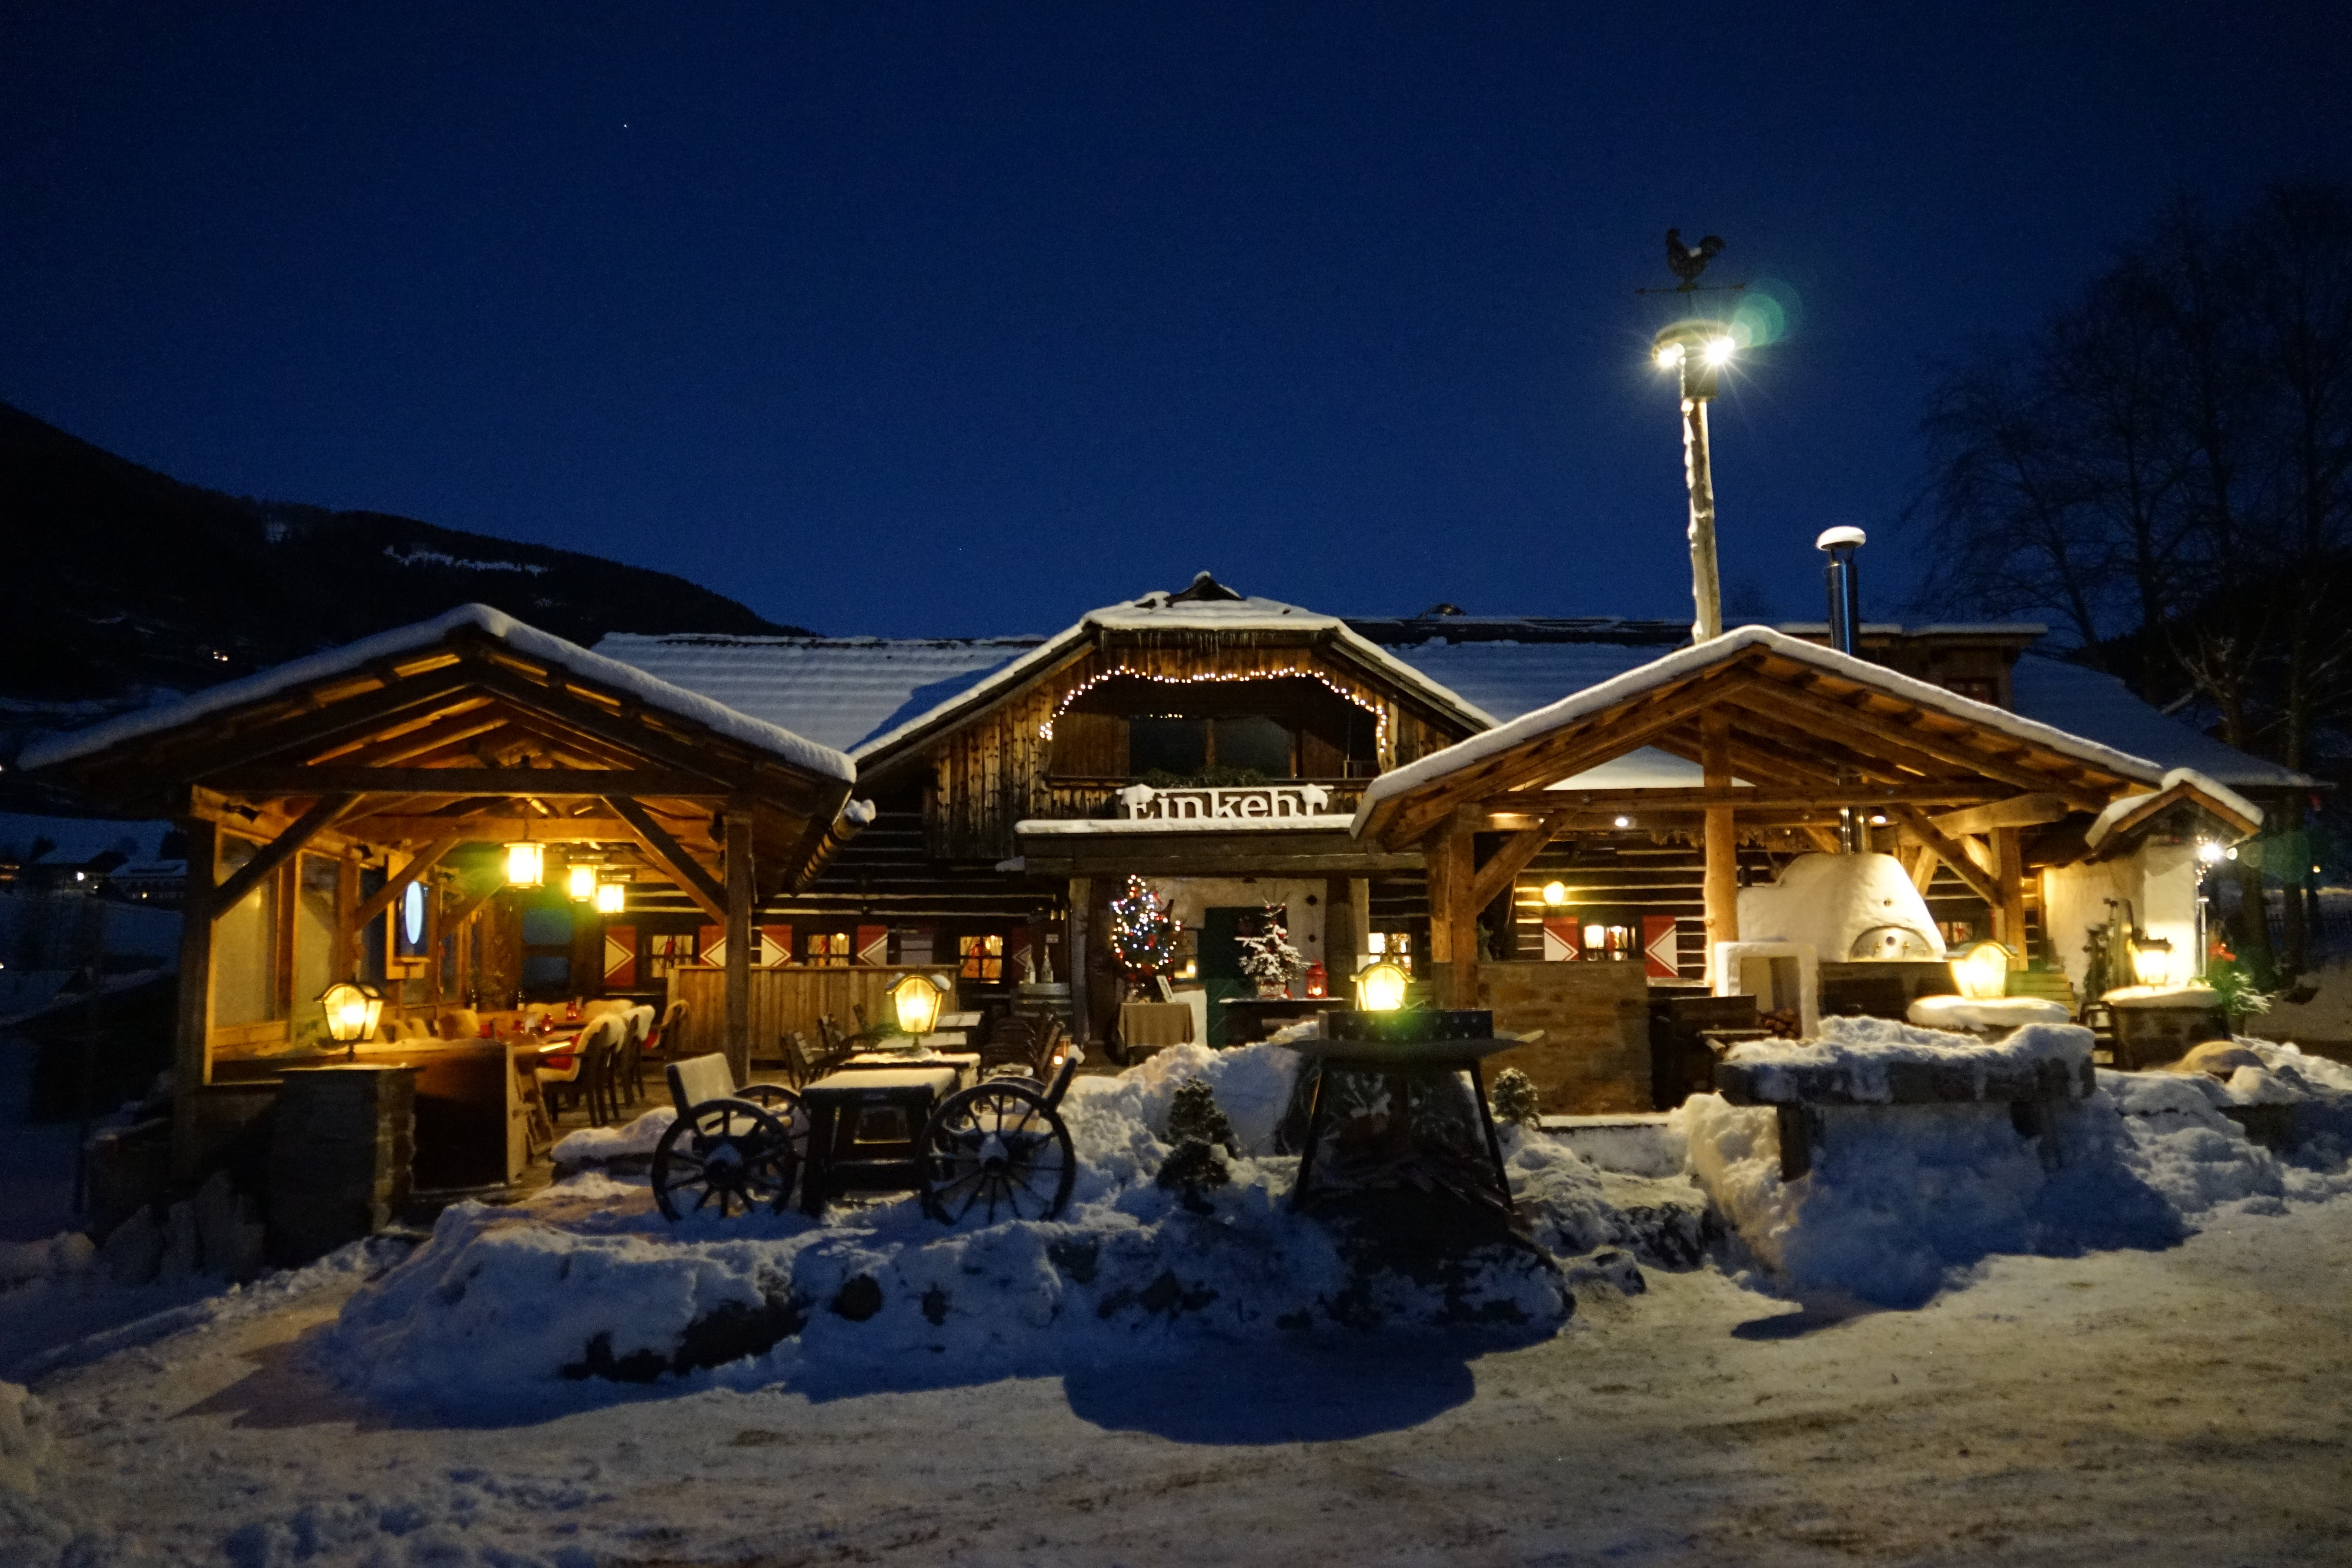 Il ristorante Einkehr dall'esterno coperto di neve